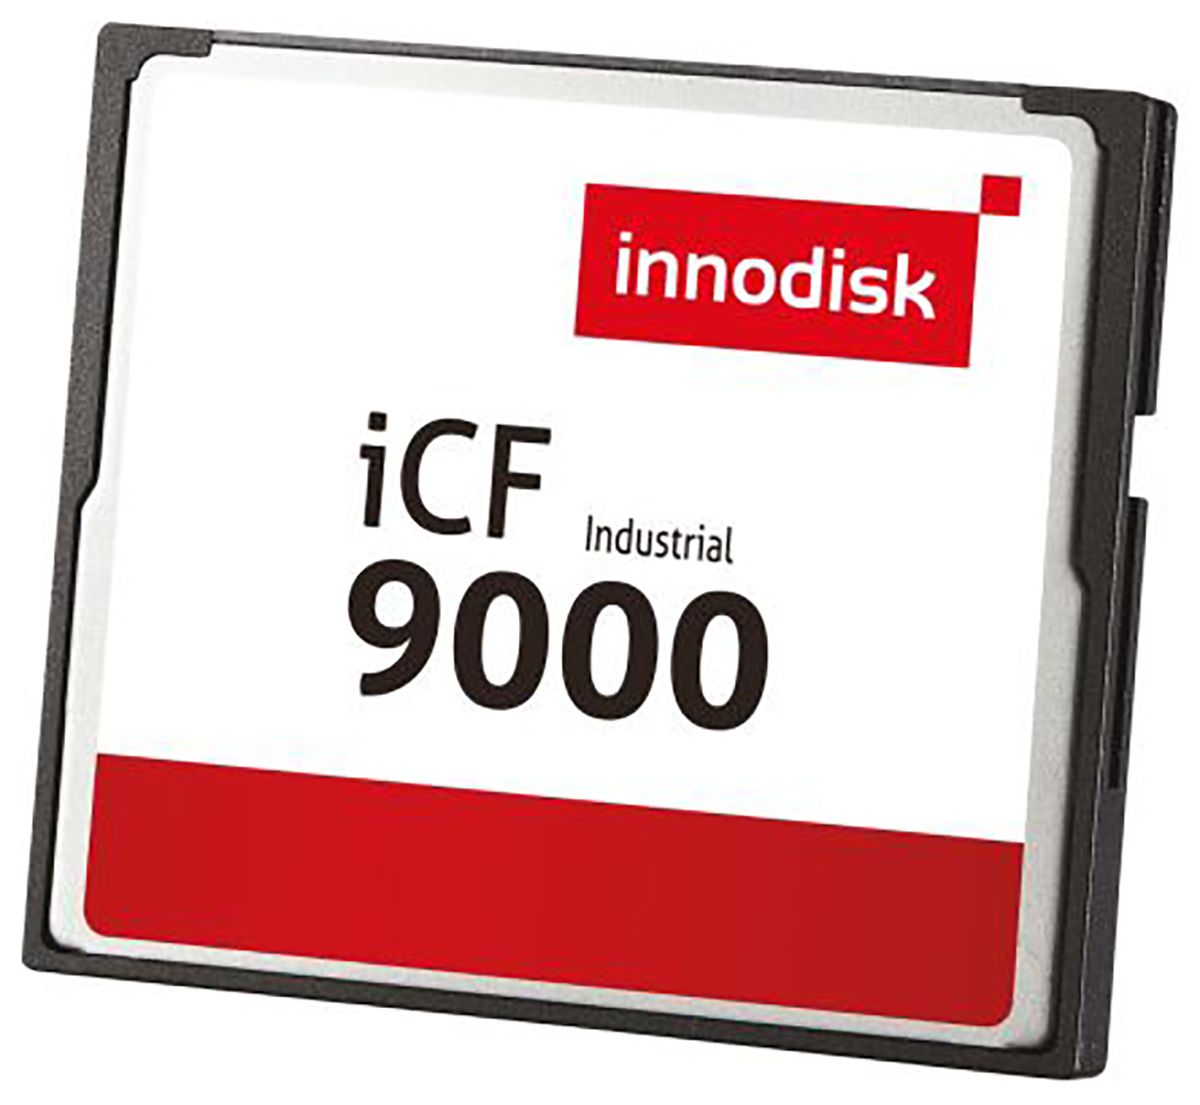 InnoDisk iCF9000 Industrial 16 GB SLC Compact Flash Card